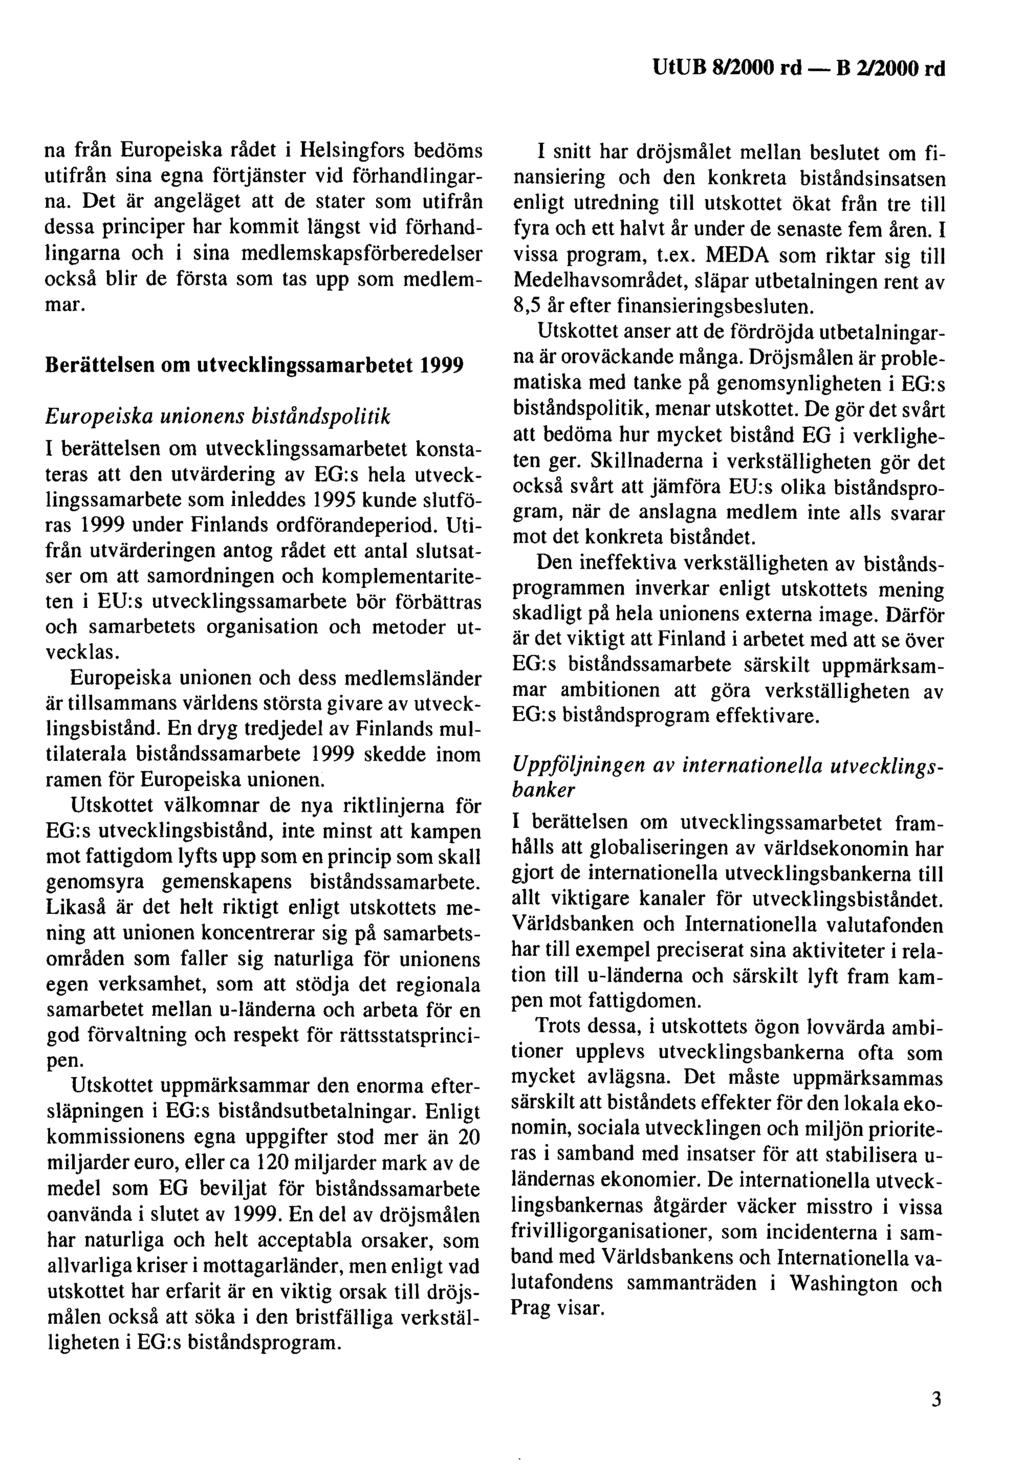 UtUB 8/2000 rd - na från Europeiska rådet i Helsingfors bedöms utifrån sina egna förtjänster vid förhandlingarna.